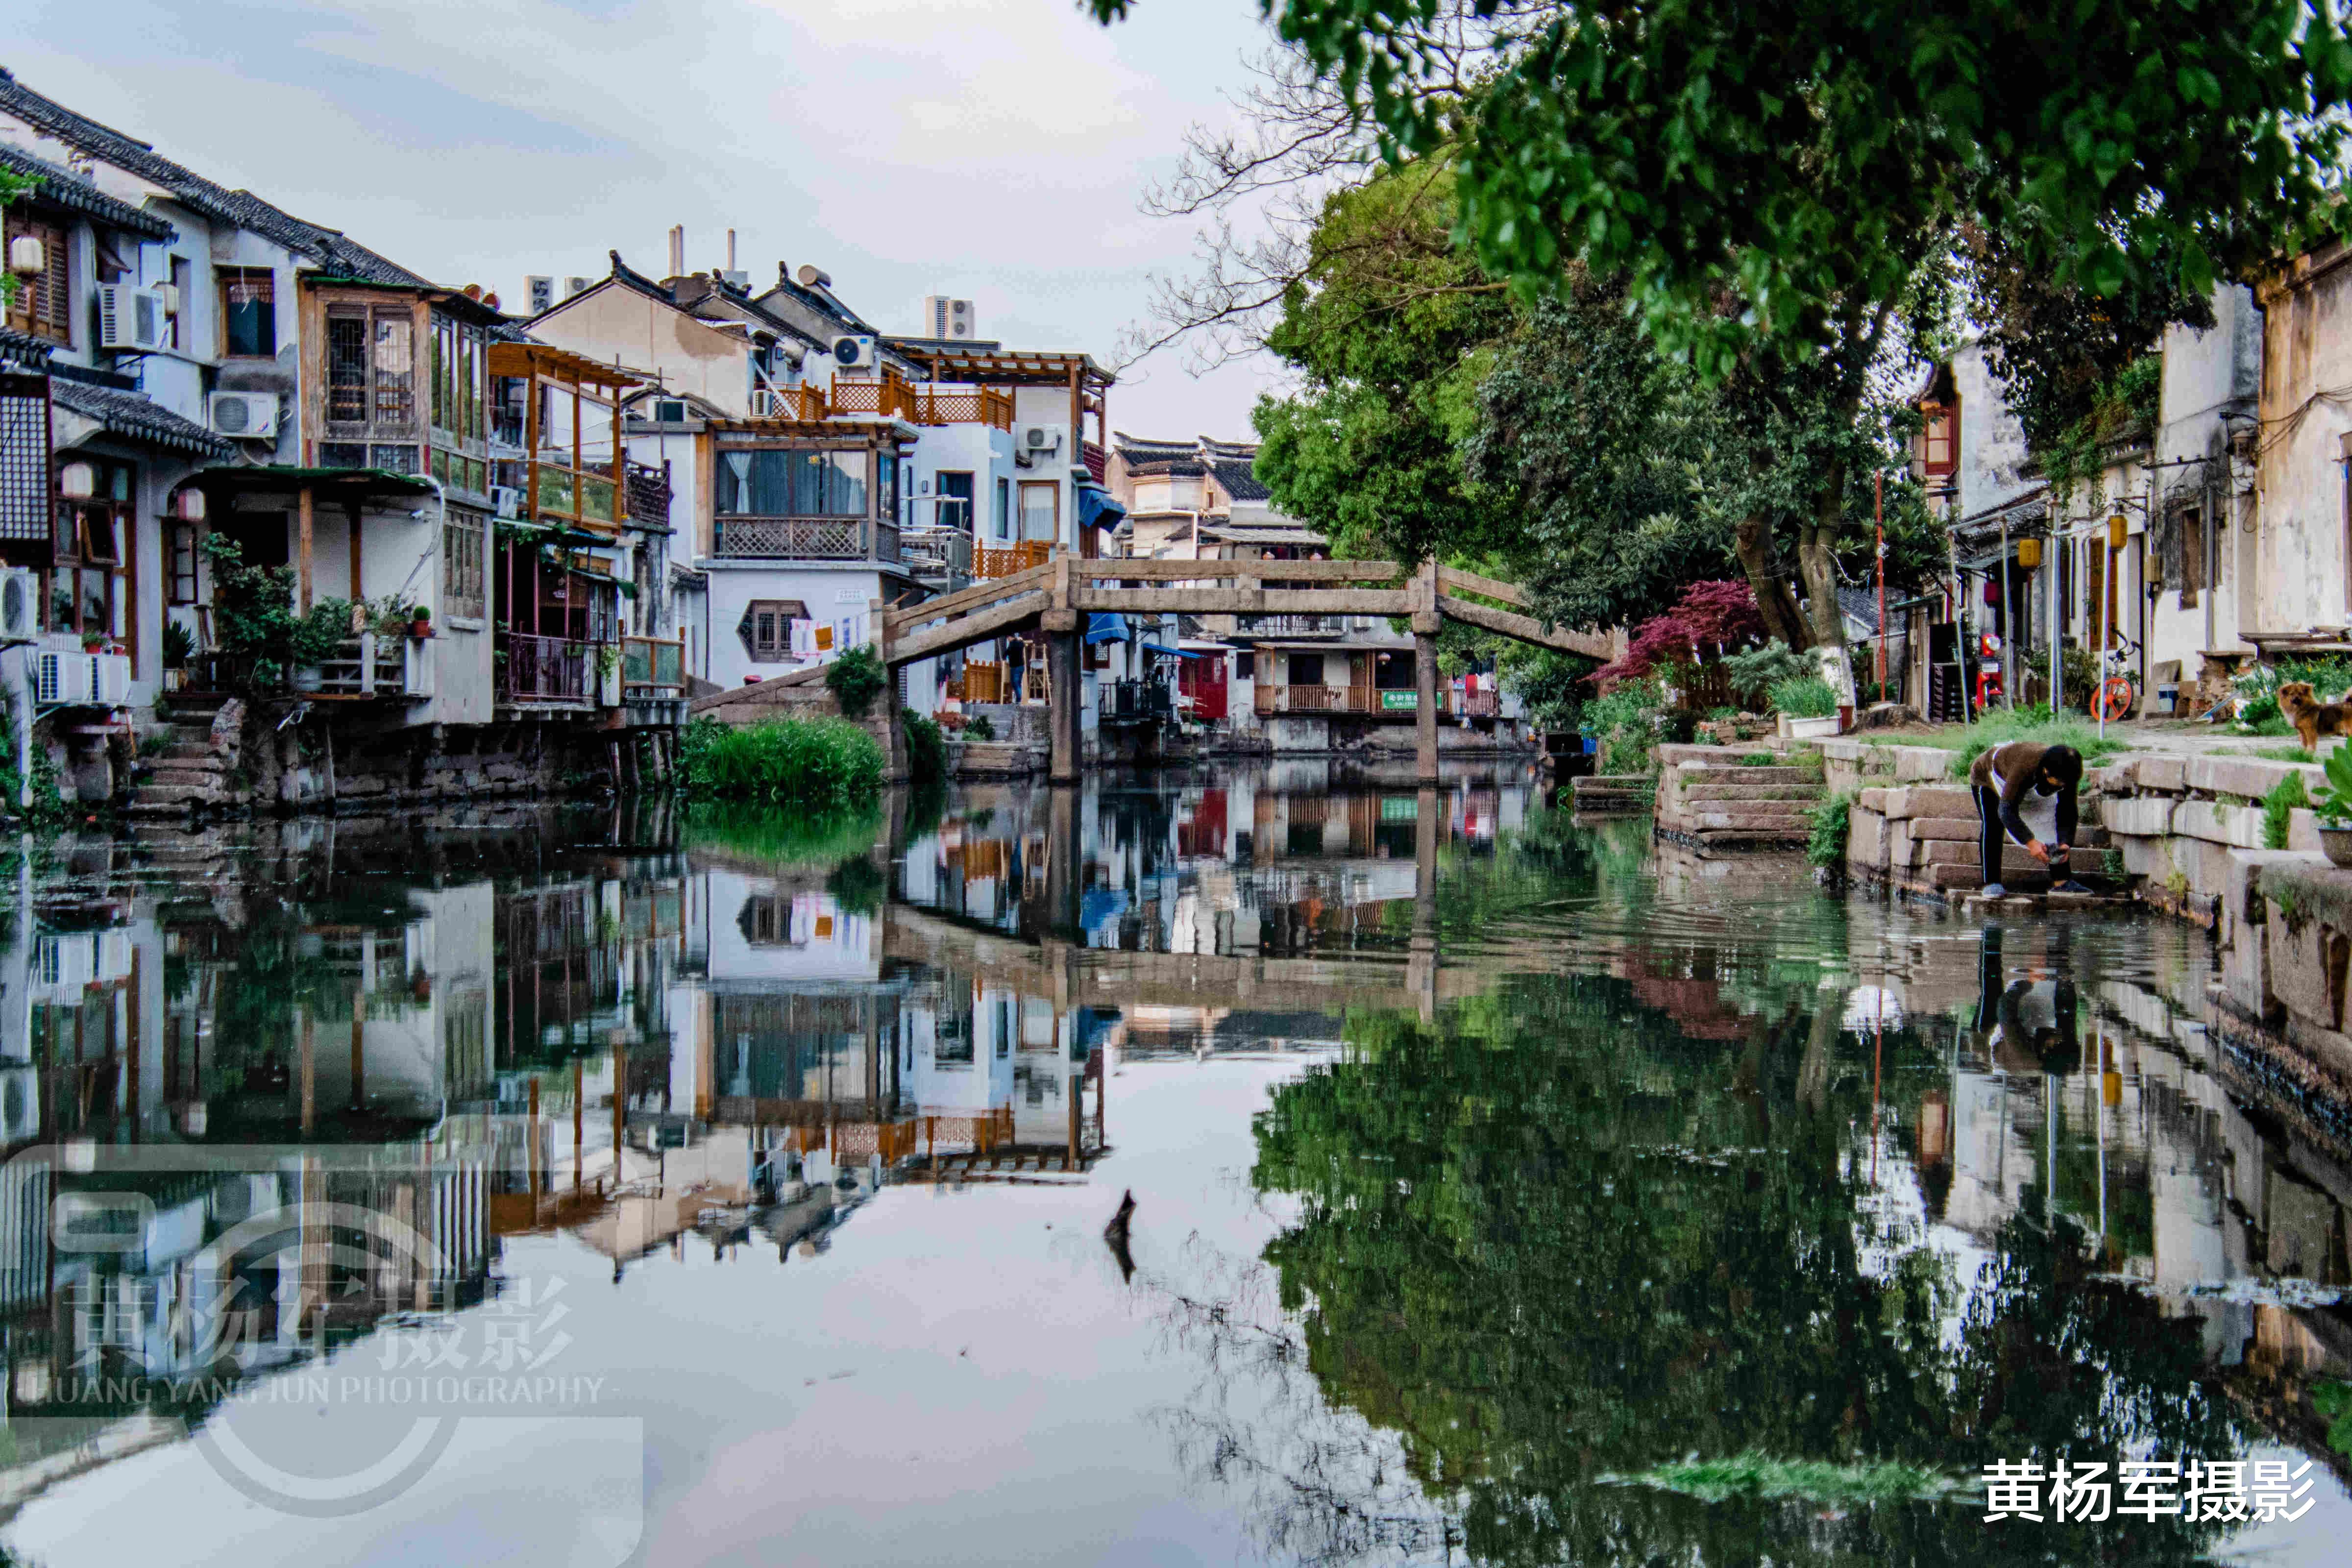 彩虹|江苏保存最完好的小镇，至今有一千多年的历史，景象原生态美如画